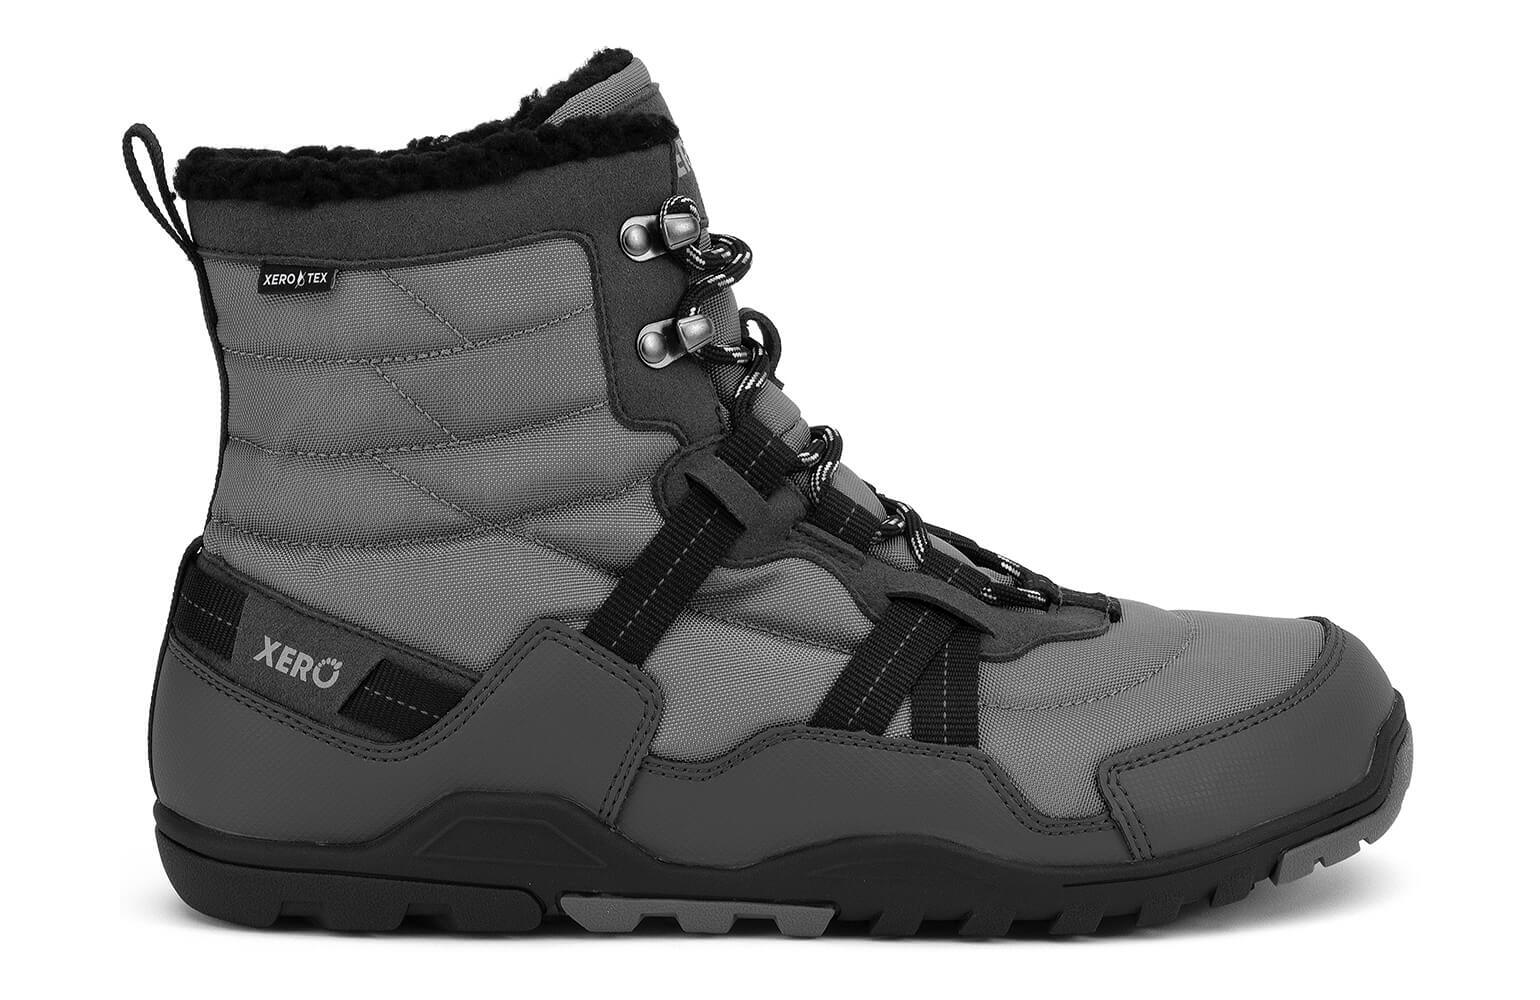 Xero Shoes | Alpine | asphalt black [AEM-ASB] heren, maat 44 eu